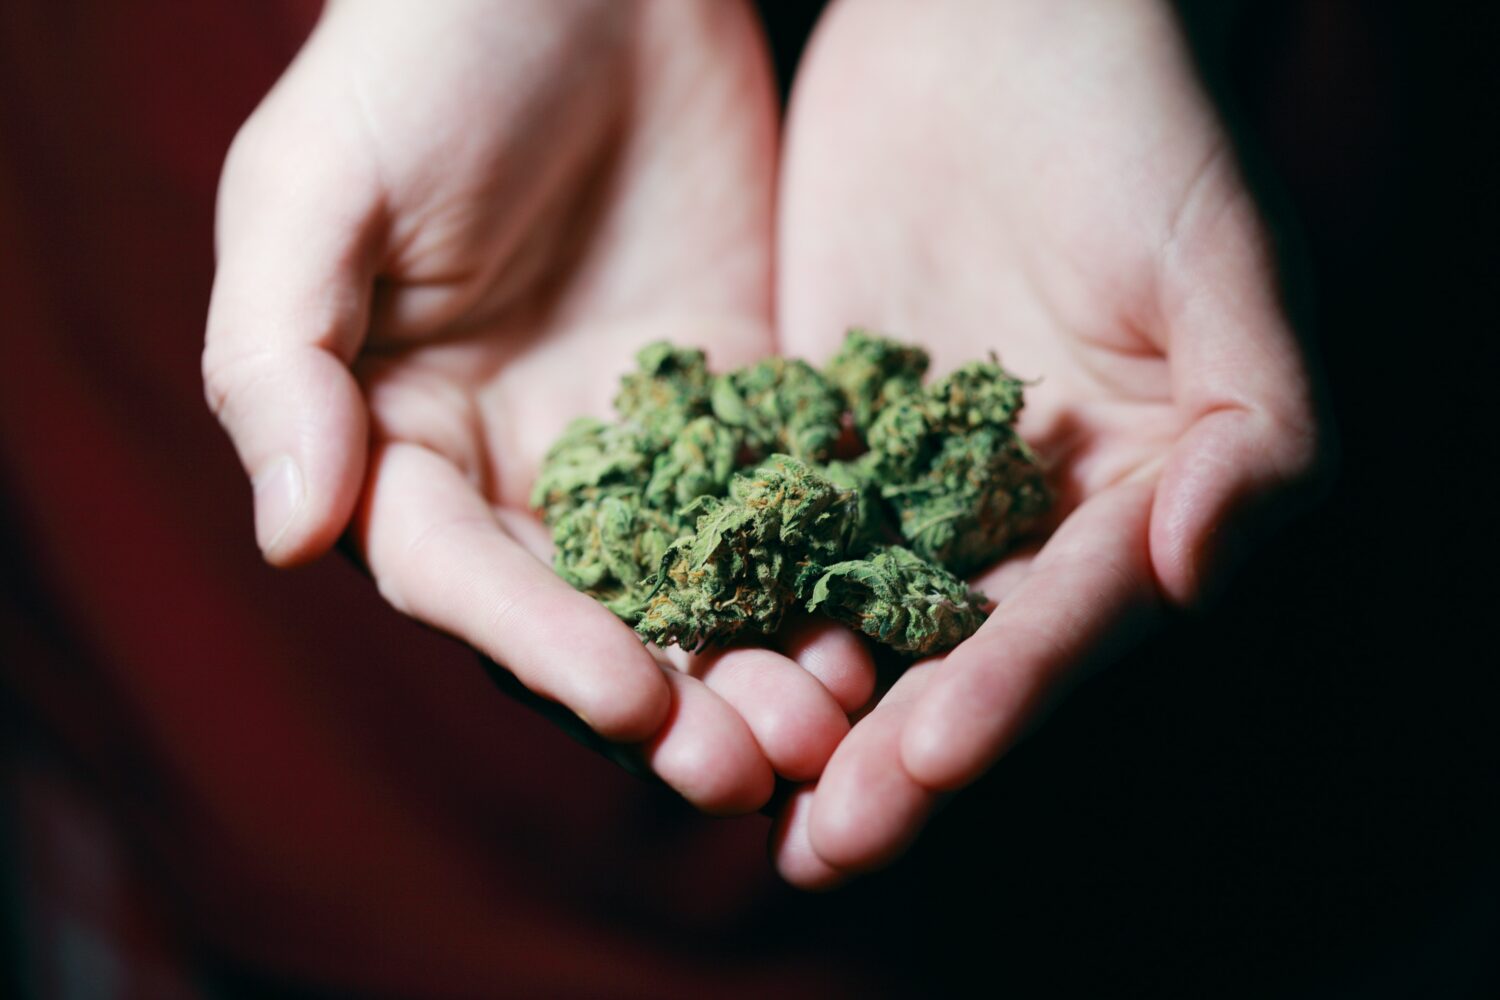 Binnenkort kan cannabis ook voor recreatief gebruik gelegaliseerd worden.